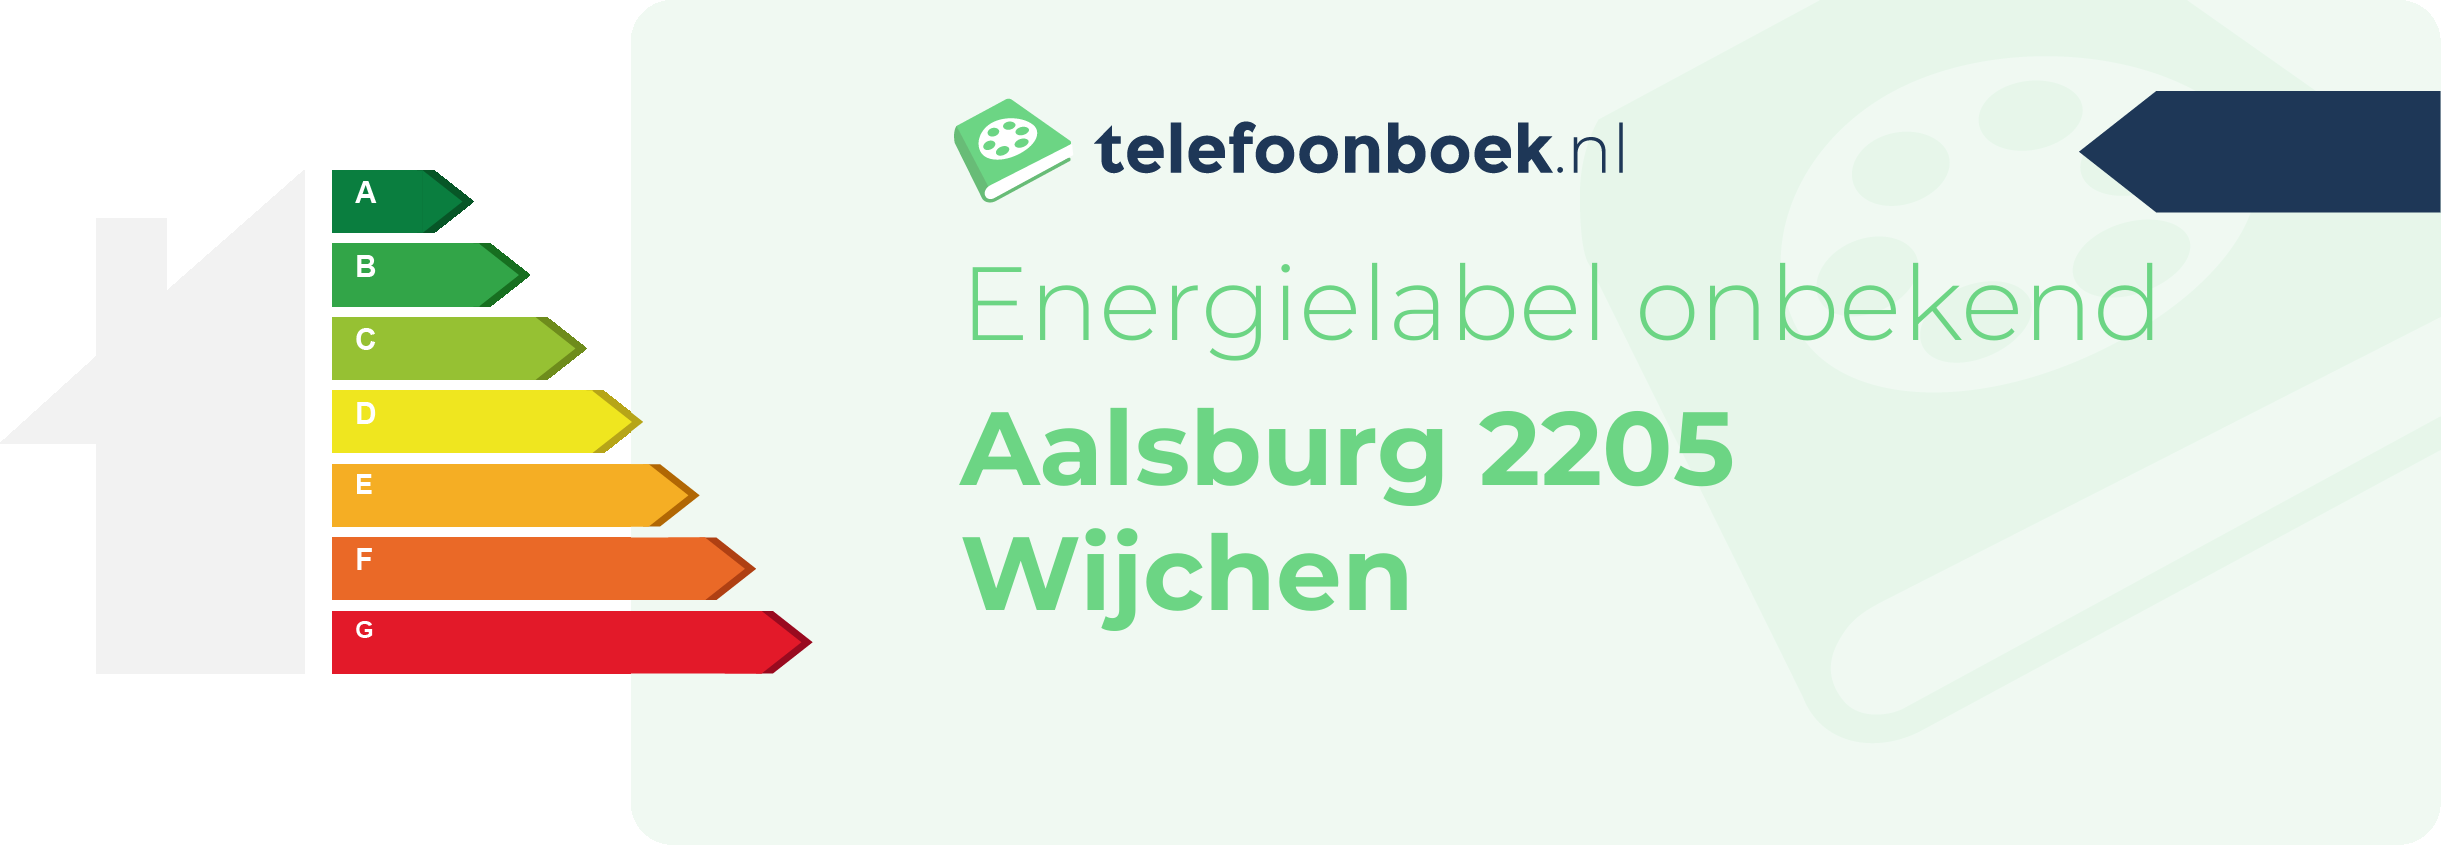 Energielabel Aalsburg 2205 Wijchen